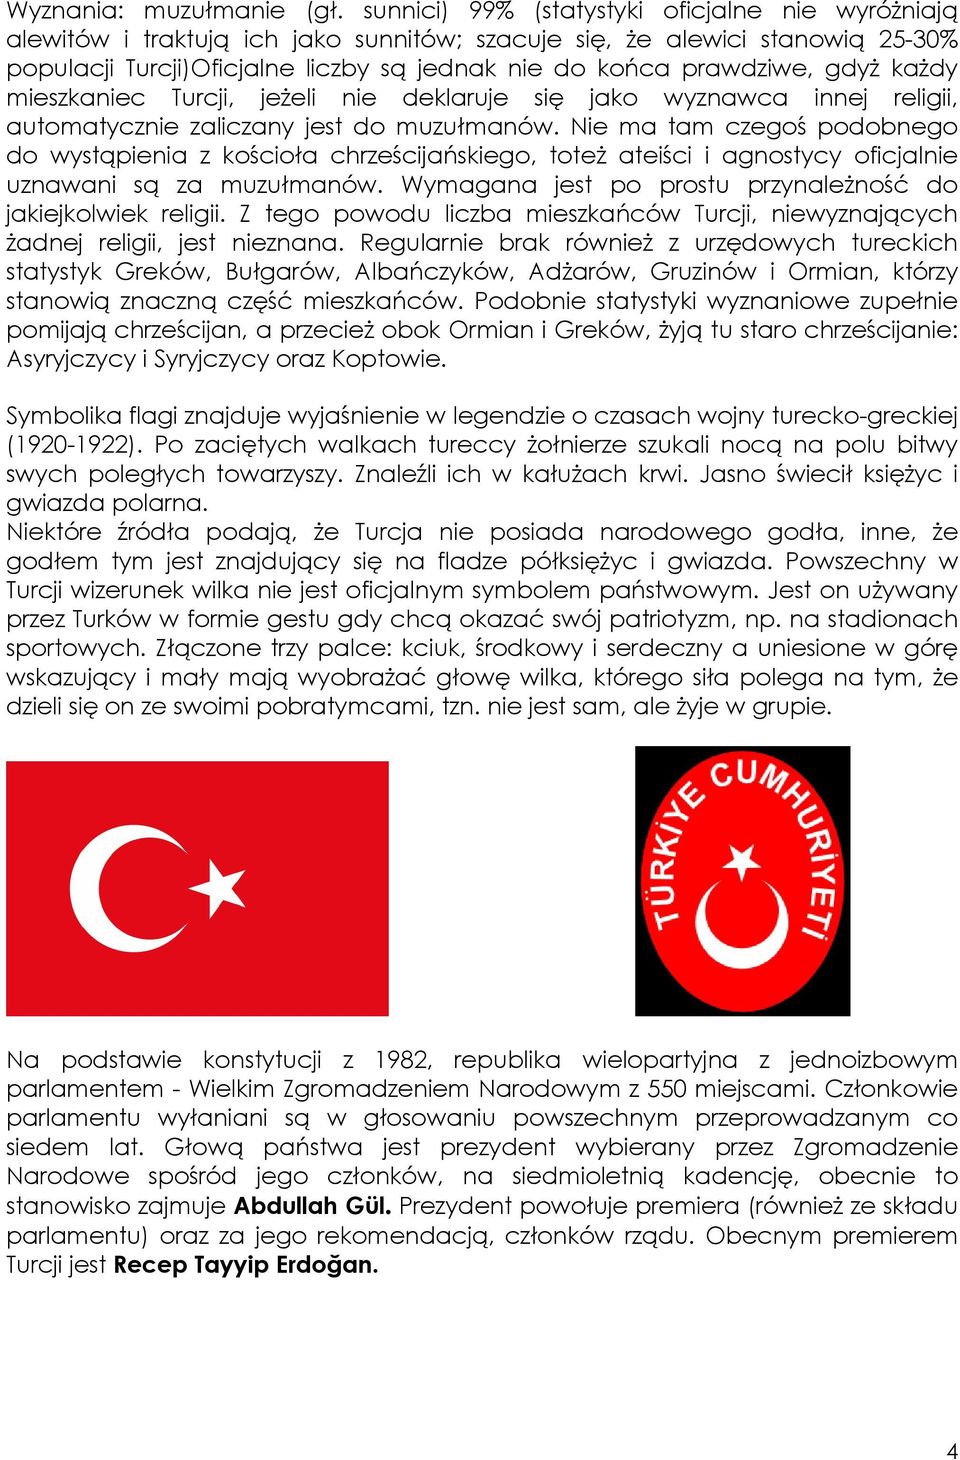 gdyŝ kaŝdy mieszkaniec Turcji, jeŝeli nie deklaruje się jako wyznawca innej religii, automatycznie zaliczany jest do muzułmanów.